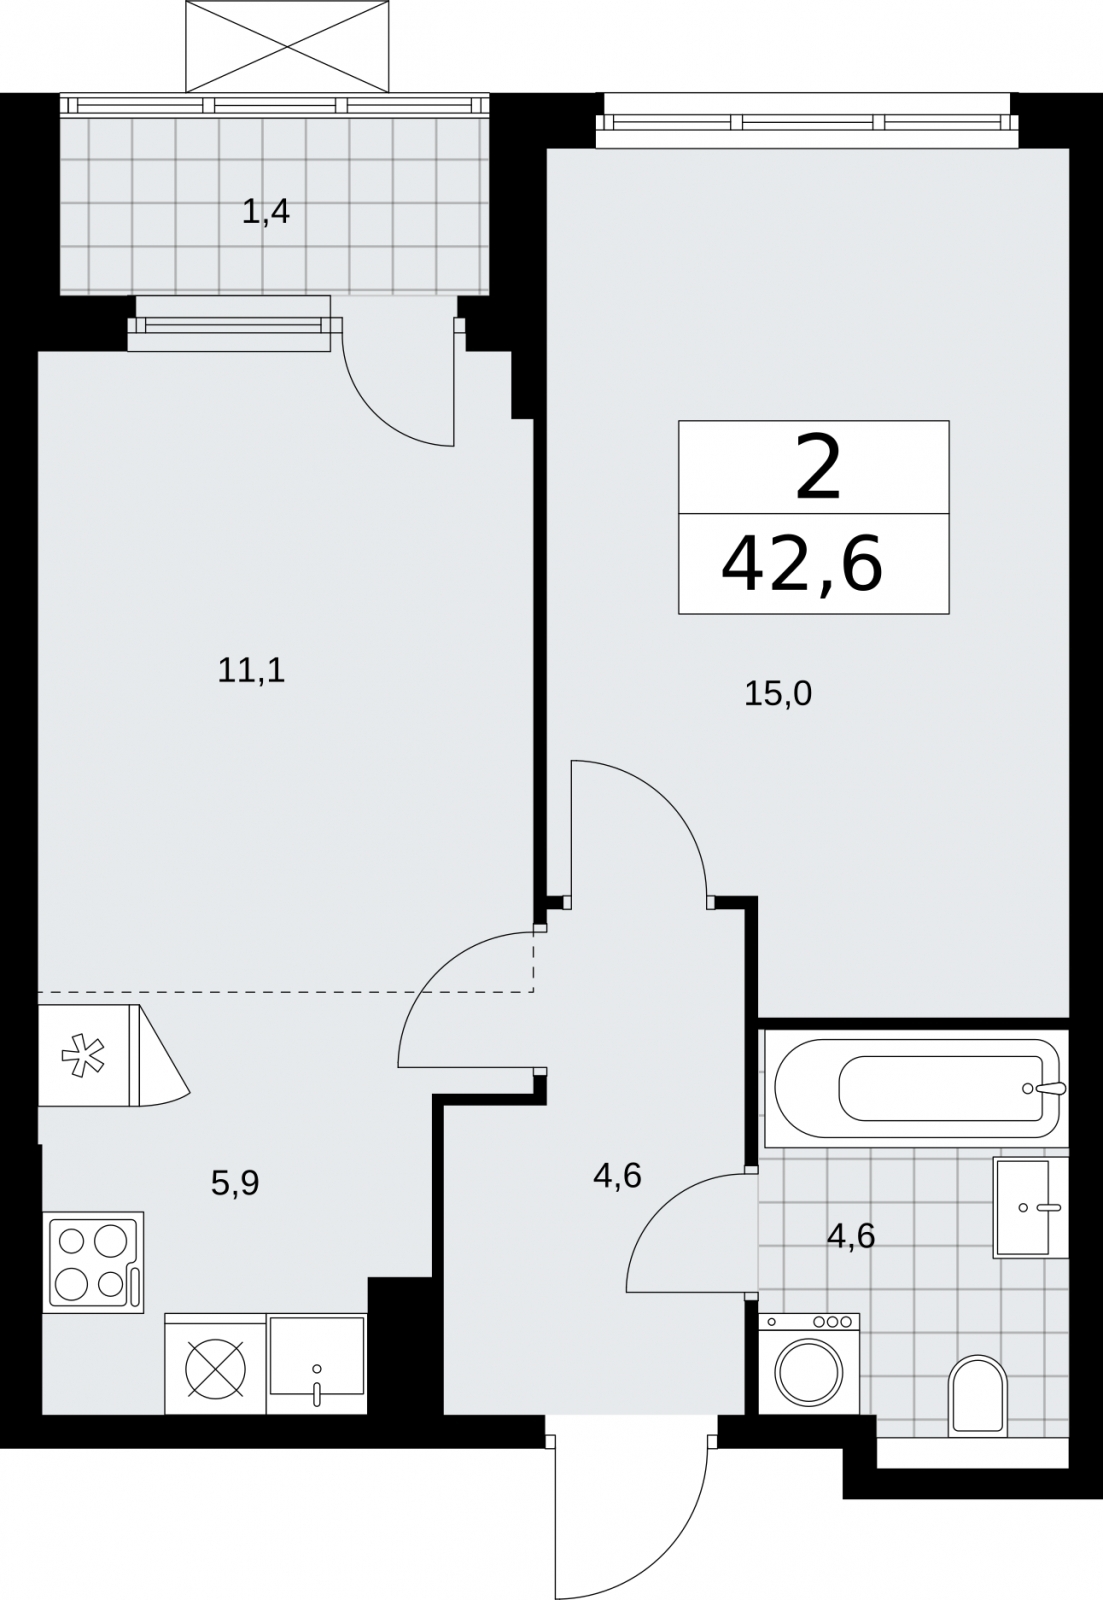 Продается просторная 2-комн. квартира с европланировкой с отделкой в новом жилом комплексе, метро рядом